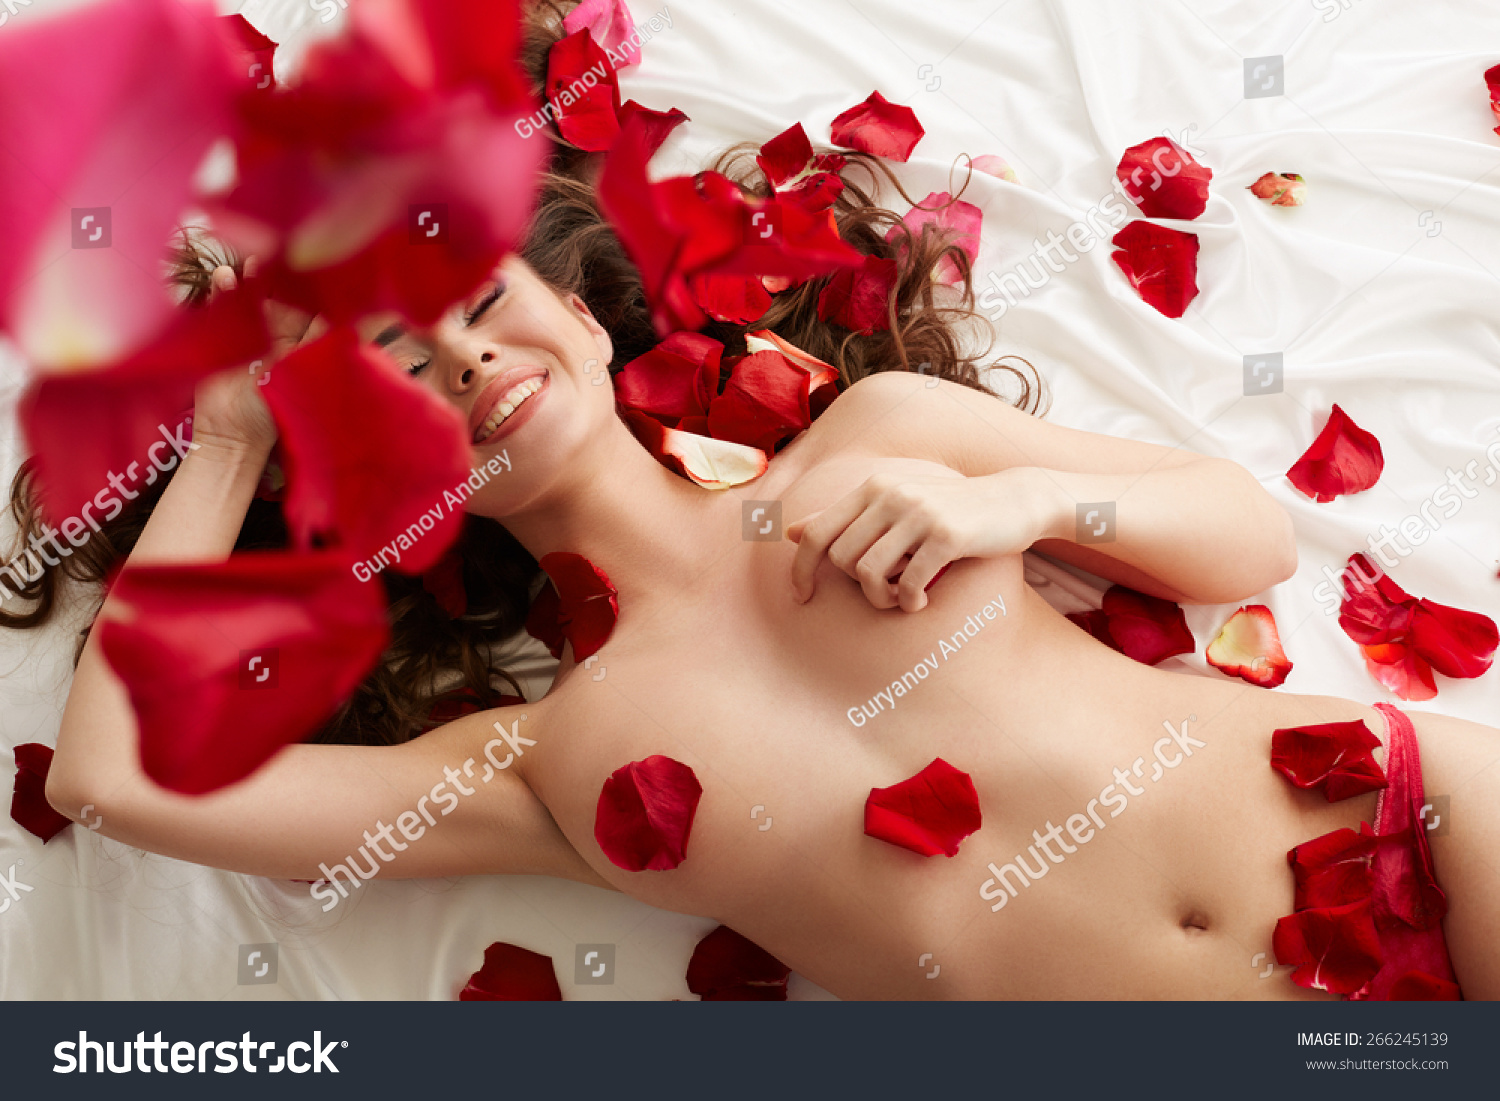 Naked röse Rose Nude